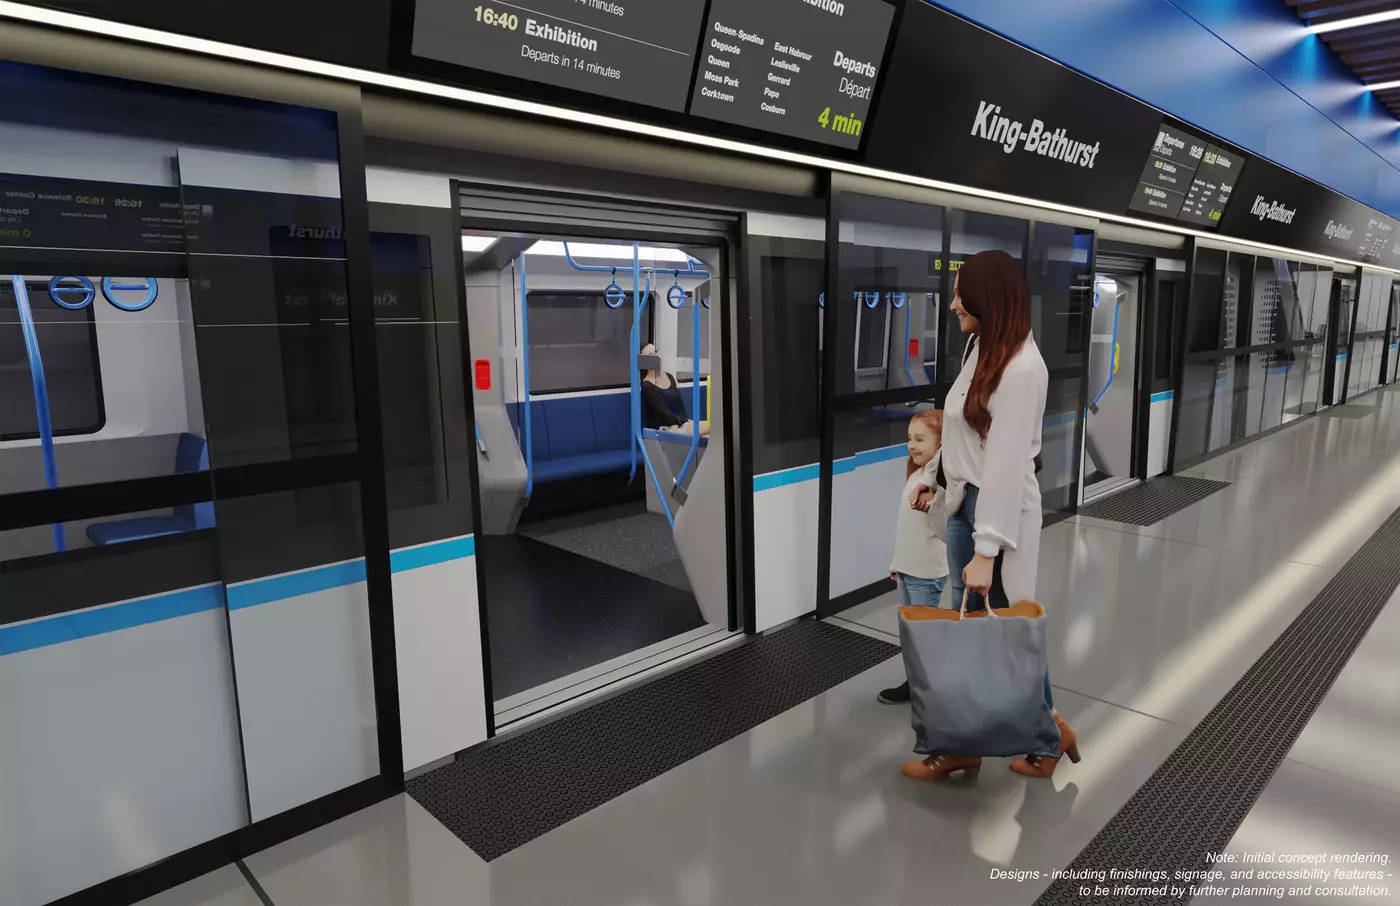 الصور الرسمية الأولى لمشروع مترو أنفاق خط أونتاريو المستقبلي الجديد